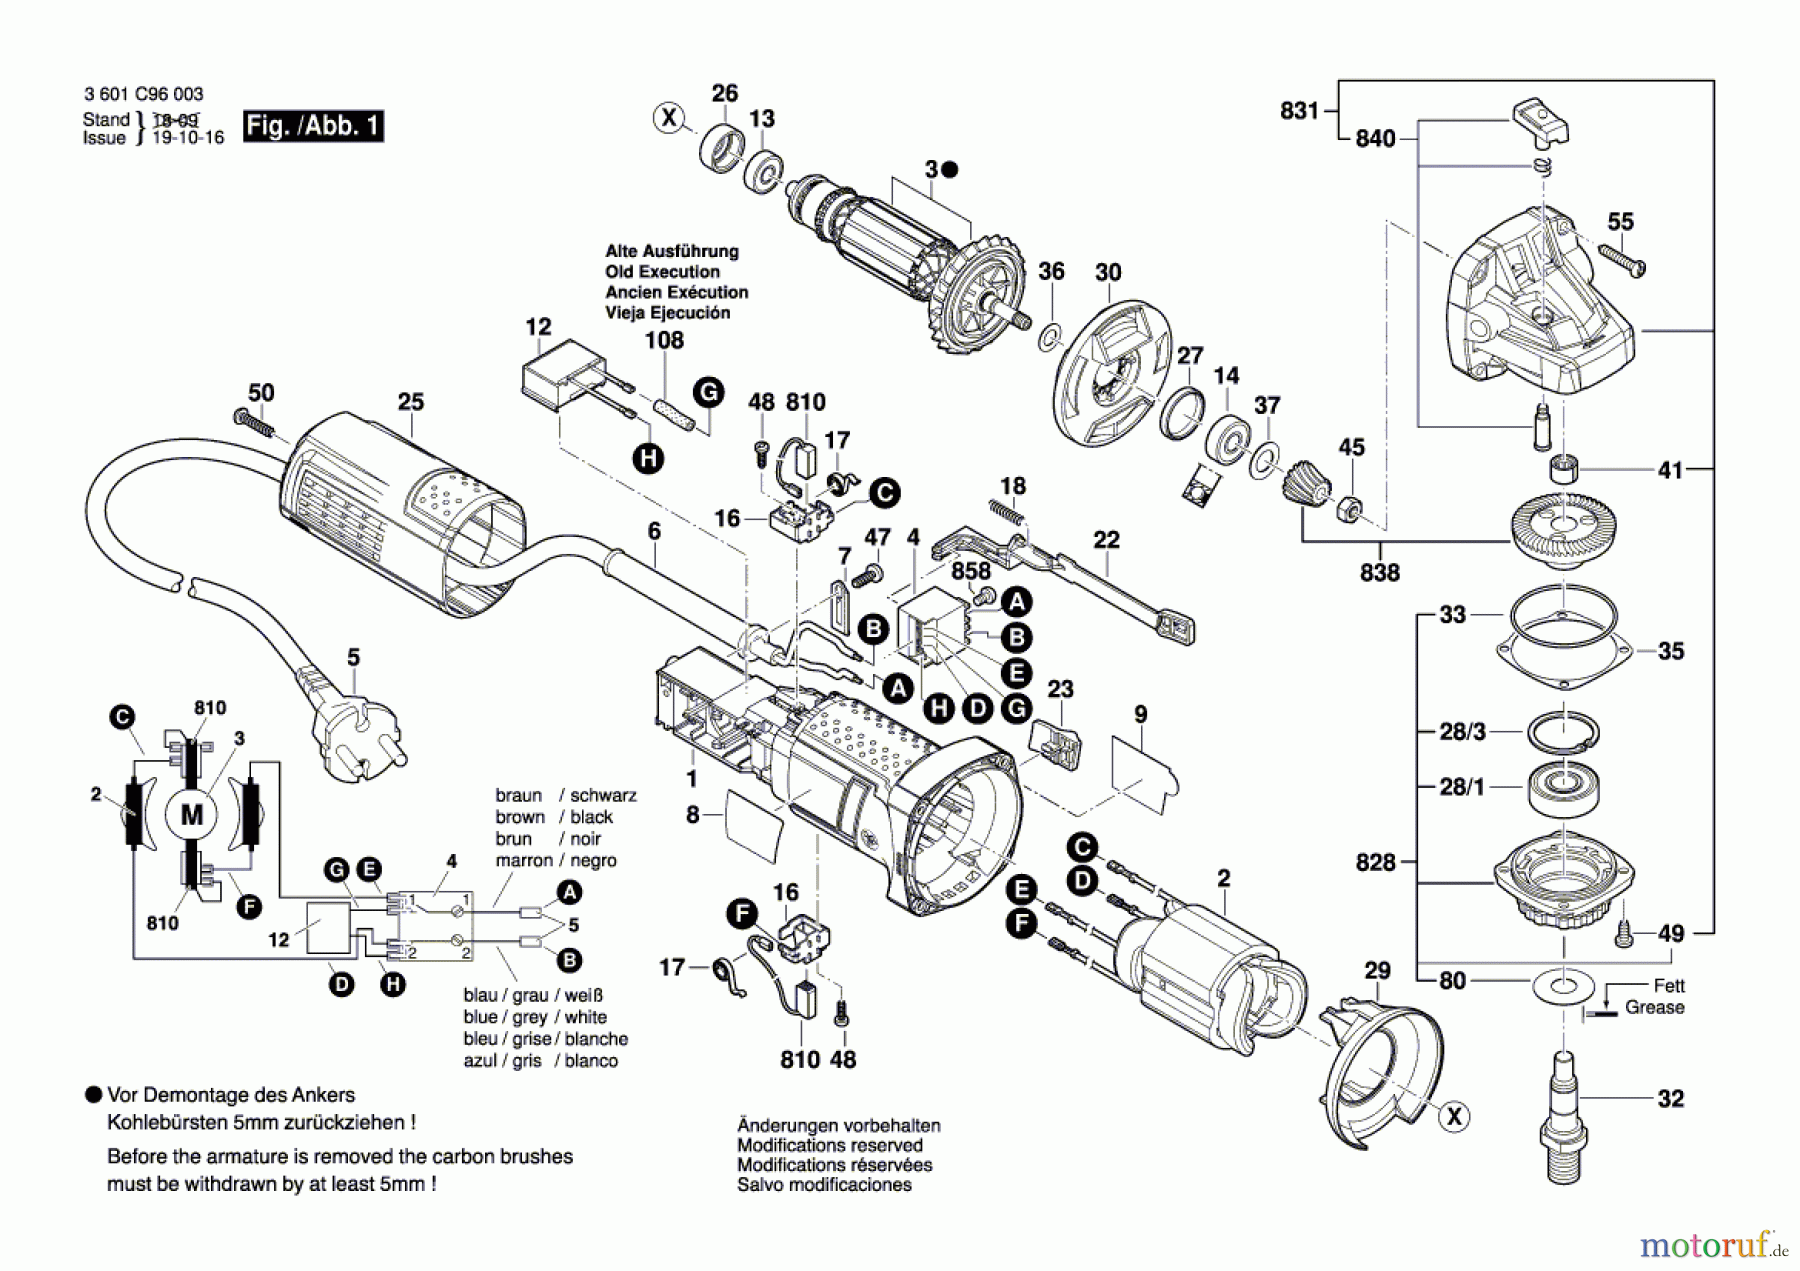  Bosch Werkzeug Winkelschleifer GWS 9-115 Seite 1